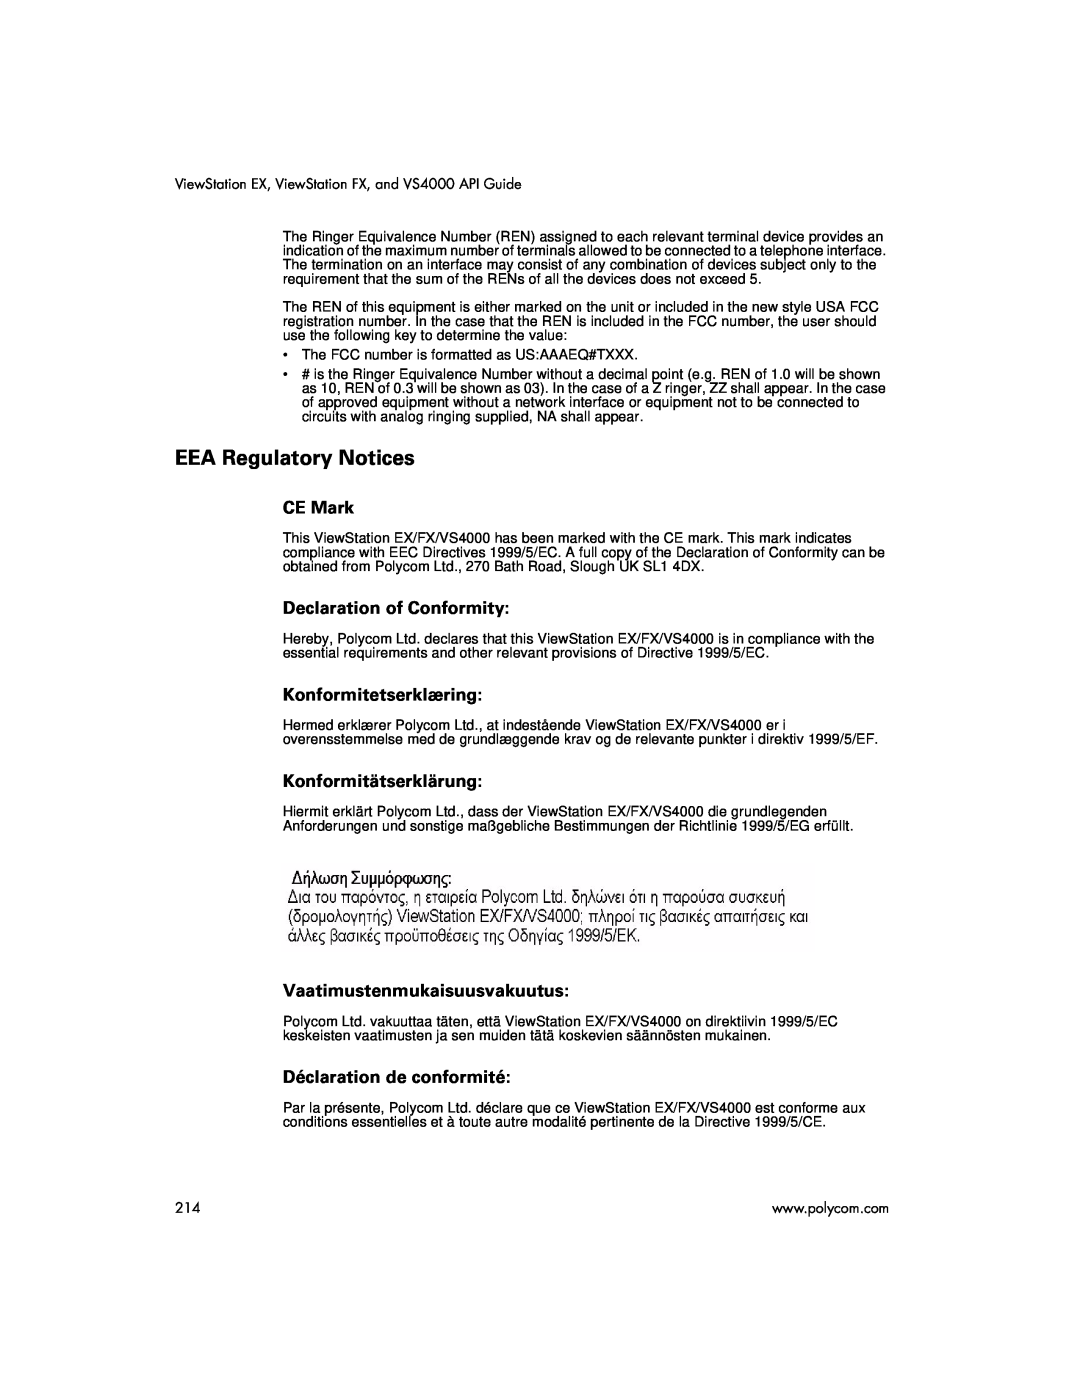 Polycom VIEWSTATION EX manual EEA Regulatory Notices, CE Mark, Declaration of Conformity, Konformitetserklæring 